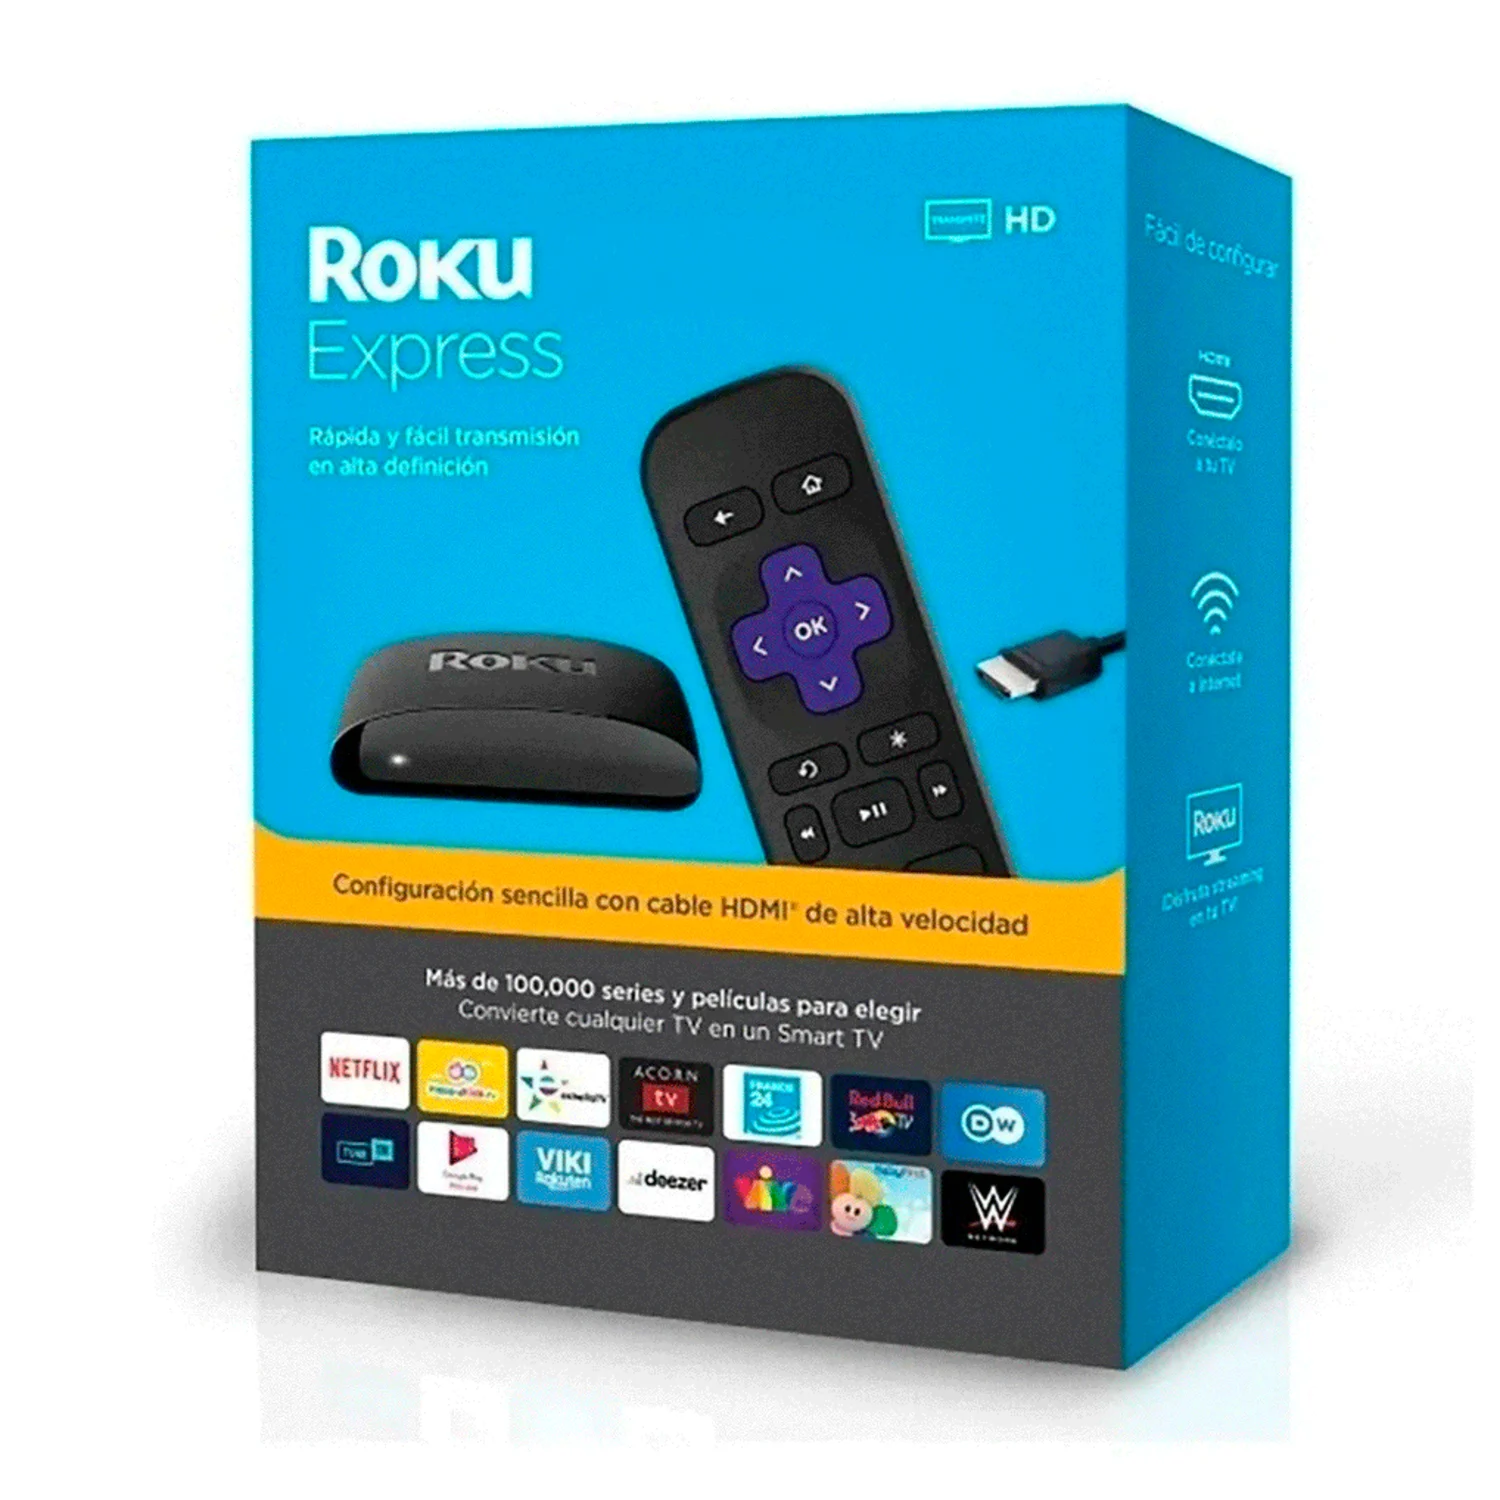 Media Player Roku Express Streaming HD / HDMI / Wifi - Preto (3930MX)